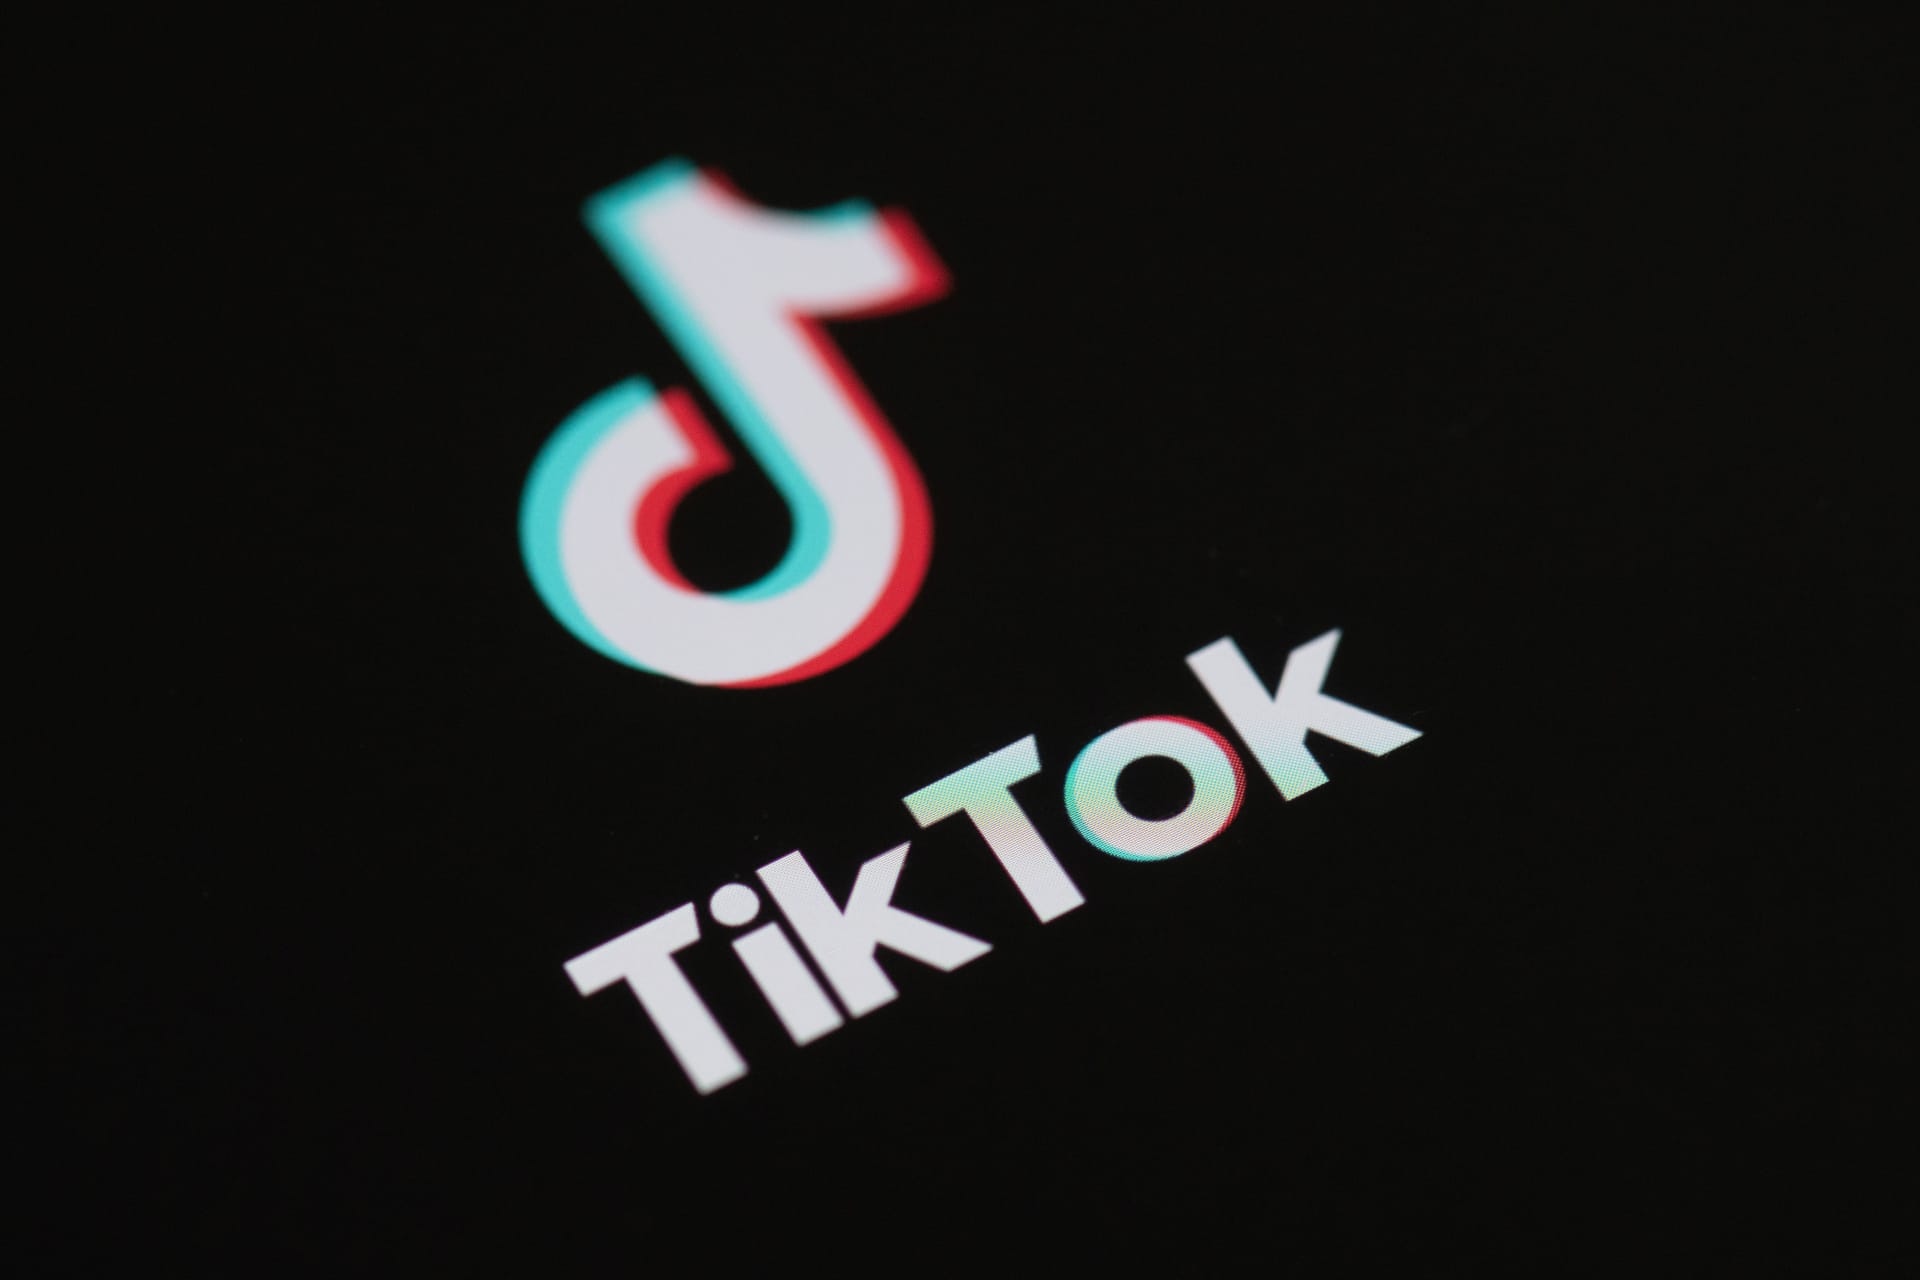 تعطل تطبيق "تيك توك" أكثر من ساعة فى جميع الولايات المتحدة بسبب انقطاع تقني